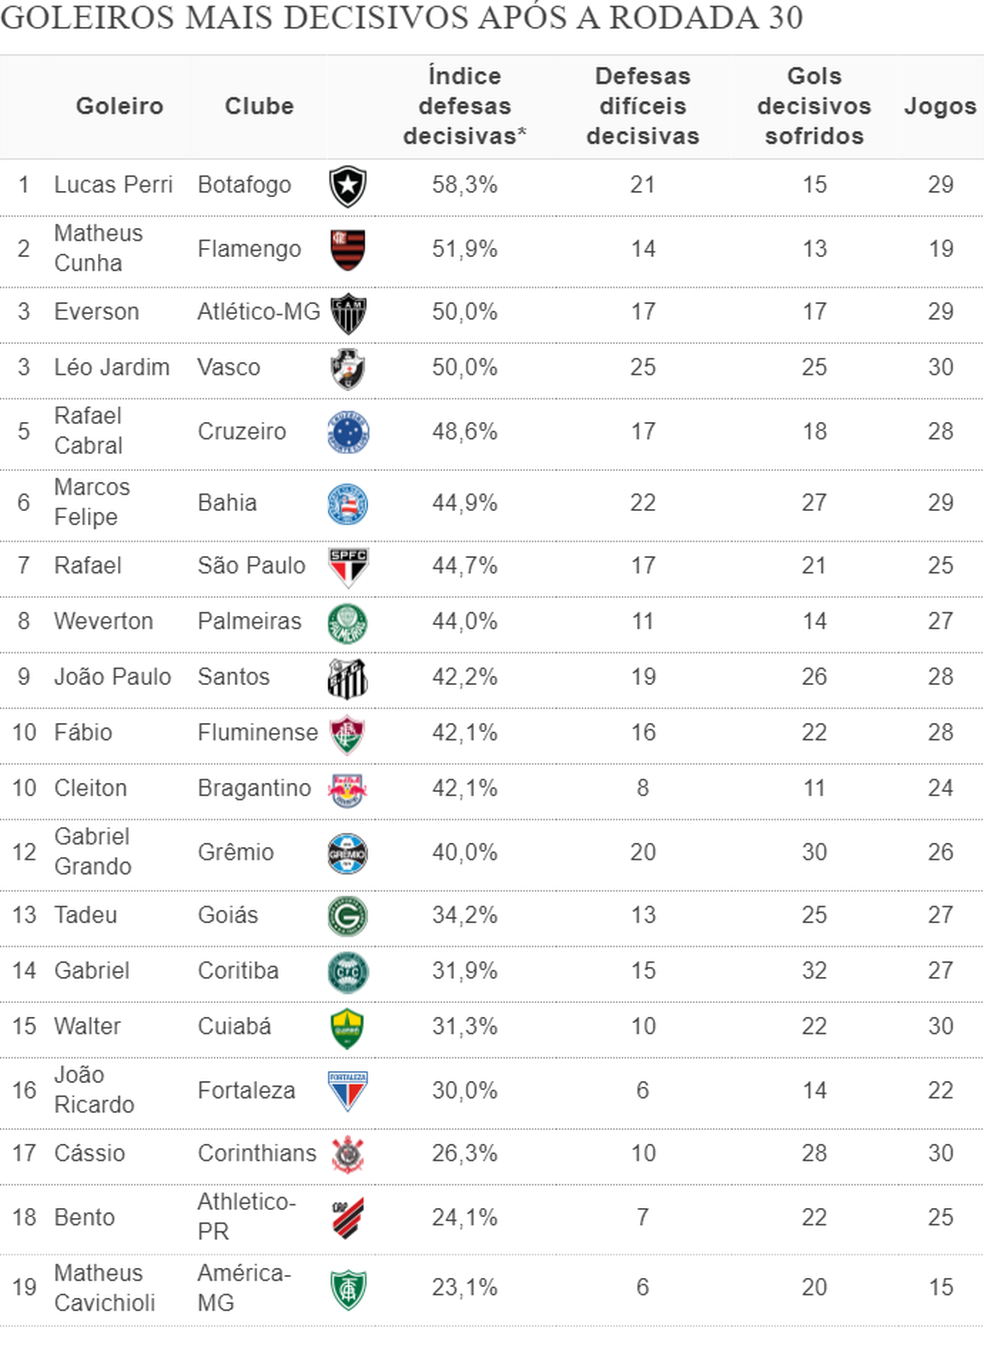 Ranking mostra quem são os goleiros mais decisivos do Brasileirão